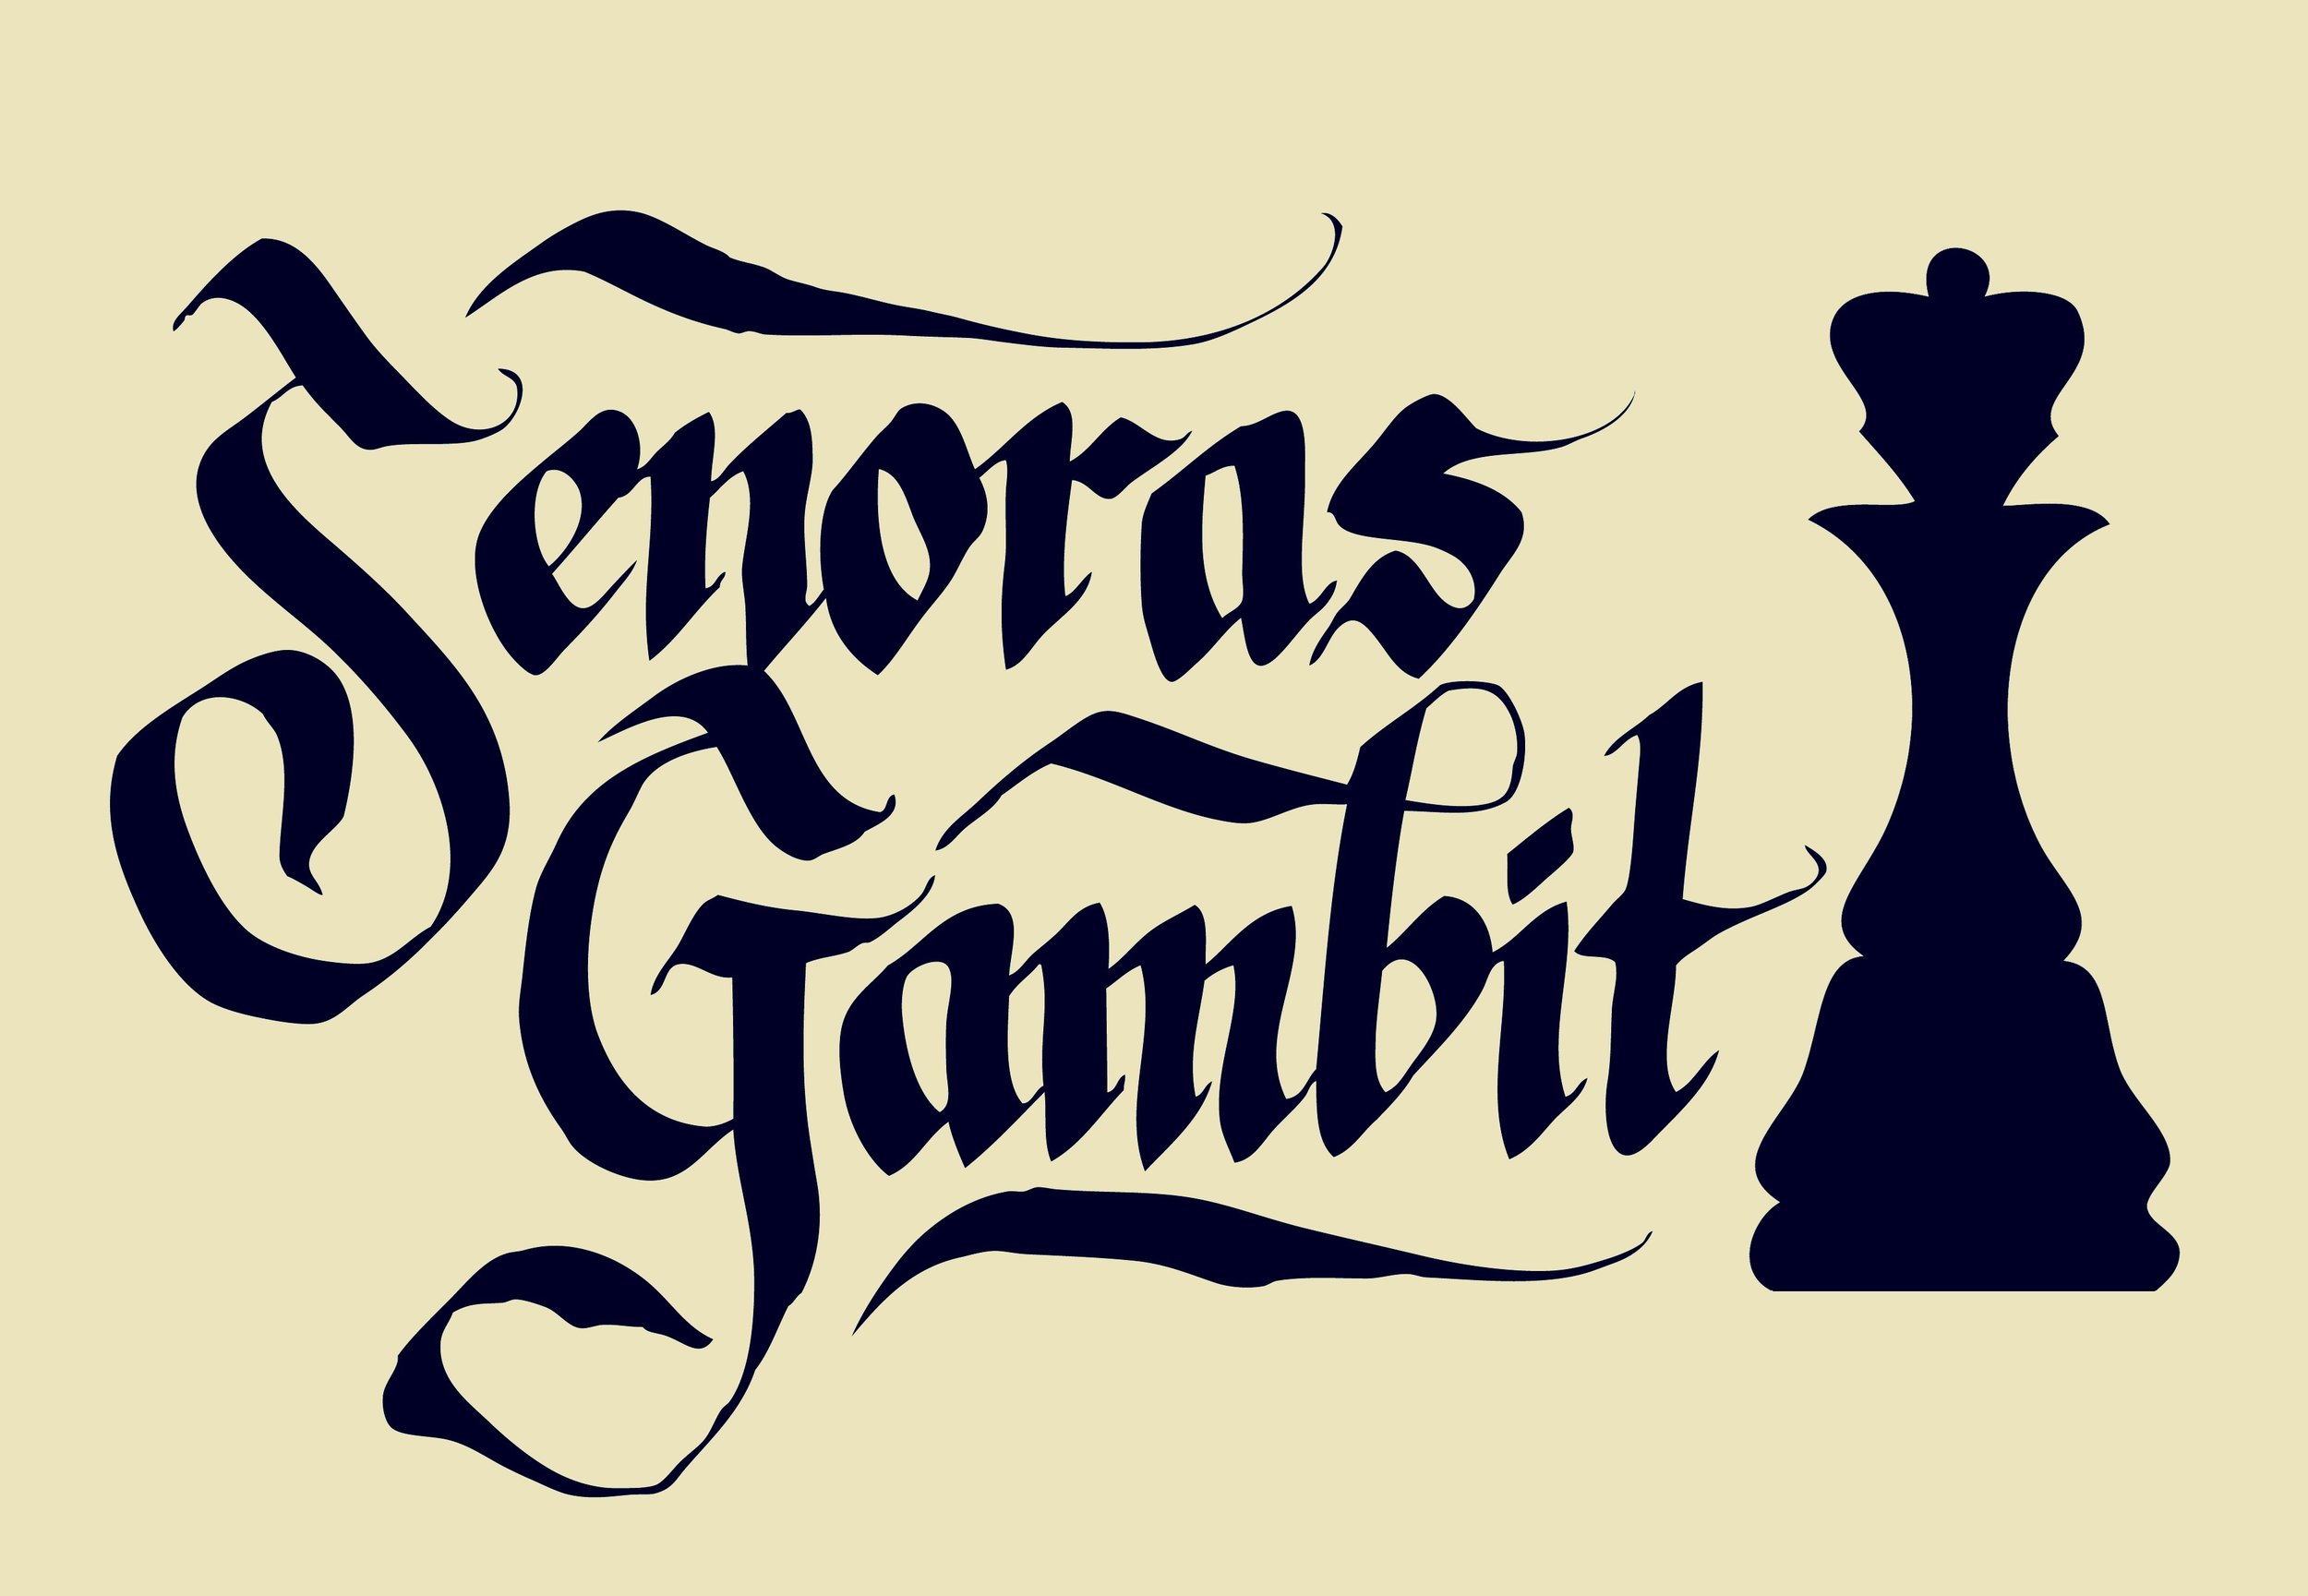 Senoras Gambit Logo (1).jpg